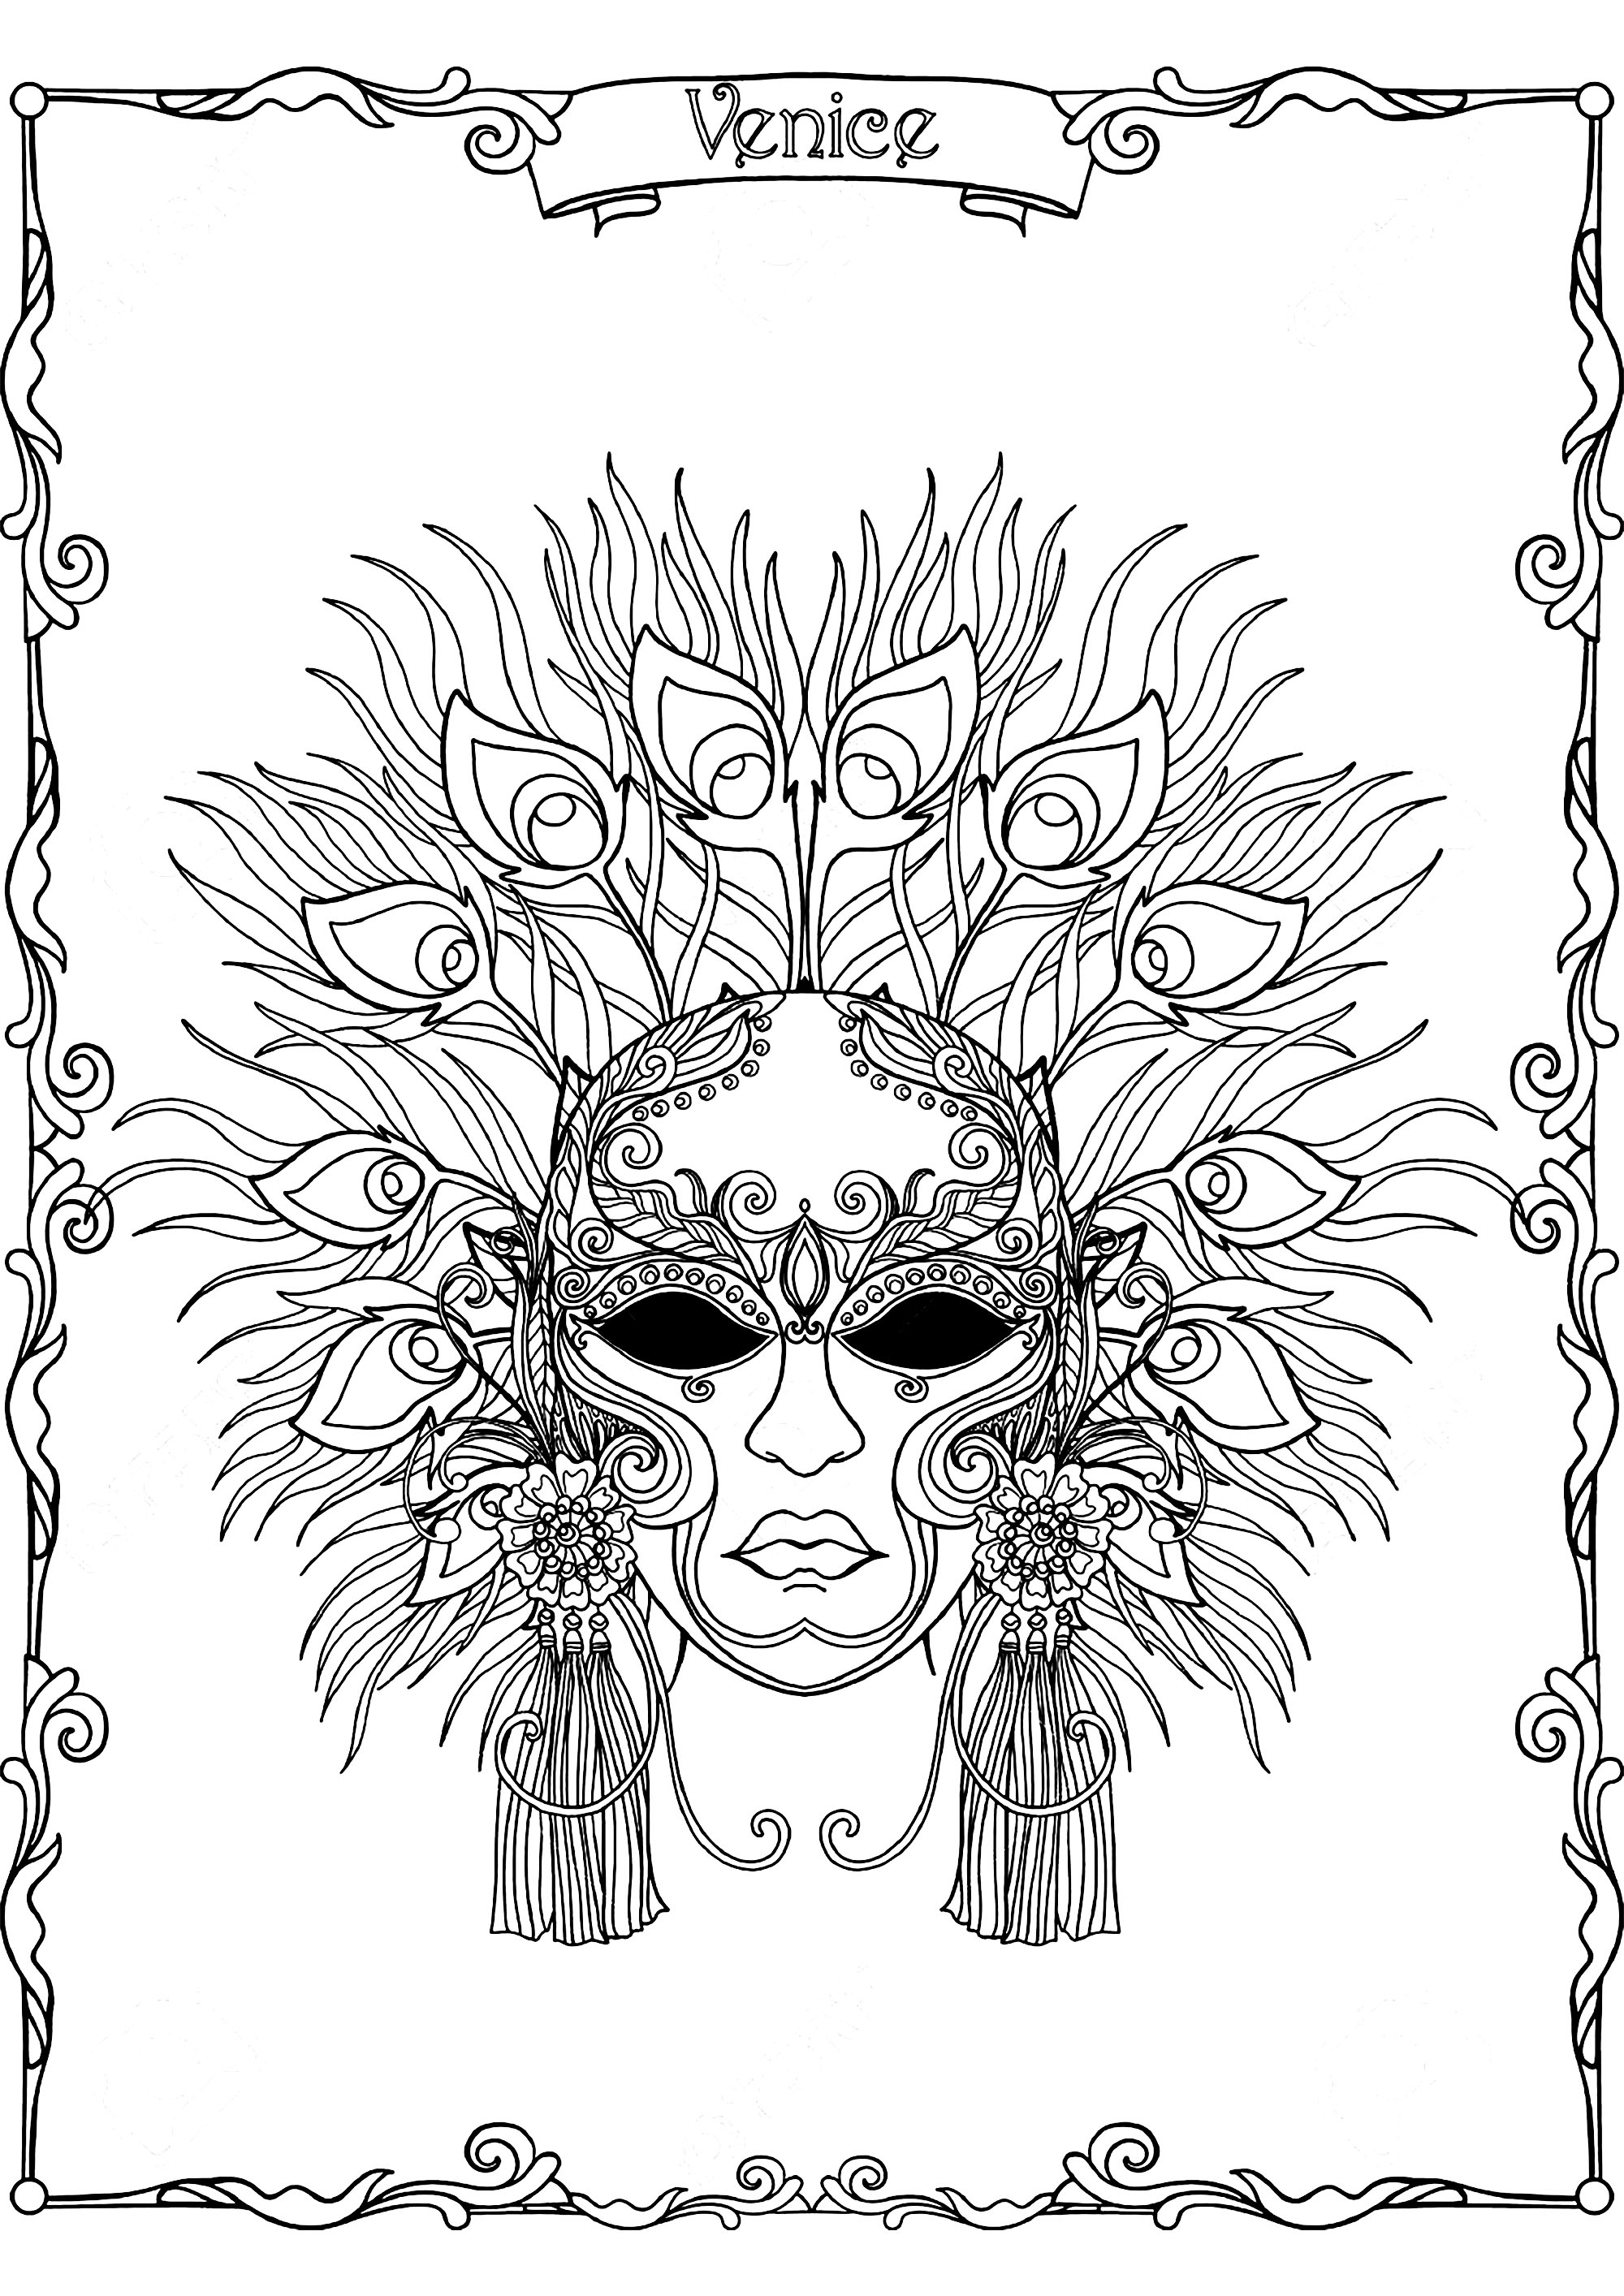 Preciosa máscara de carnaval con plumas de pavo real, del Carnaval de Venecia, Origen : 123rf   Artista : Elena Besedina